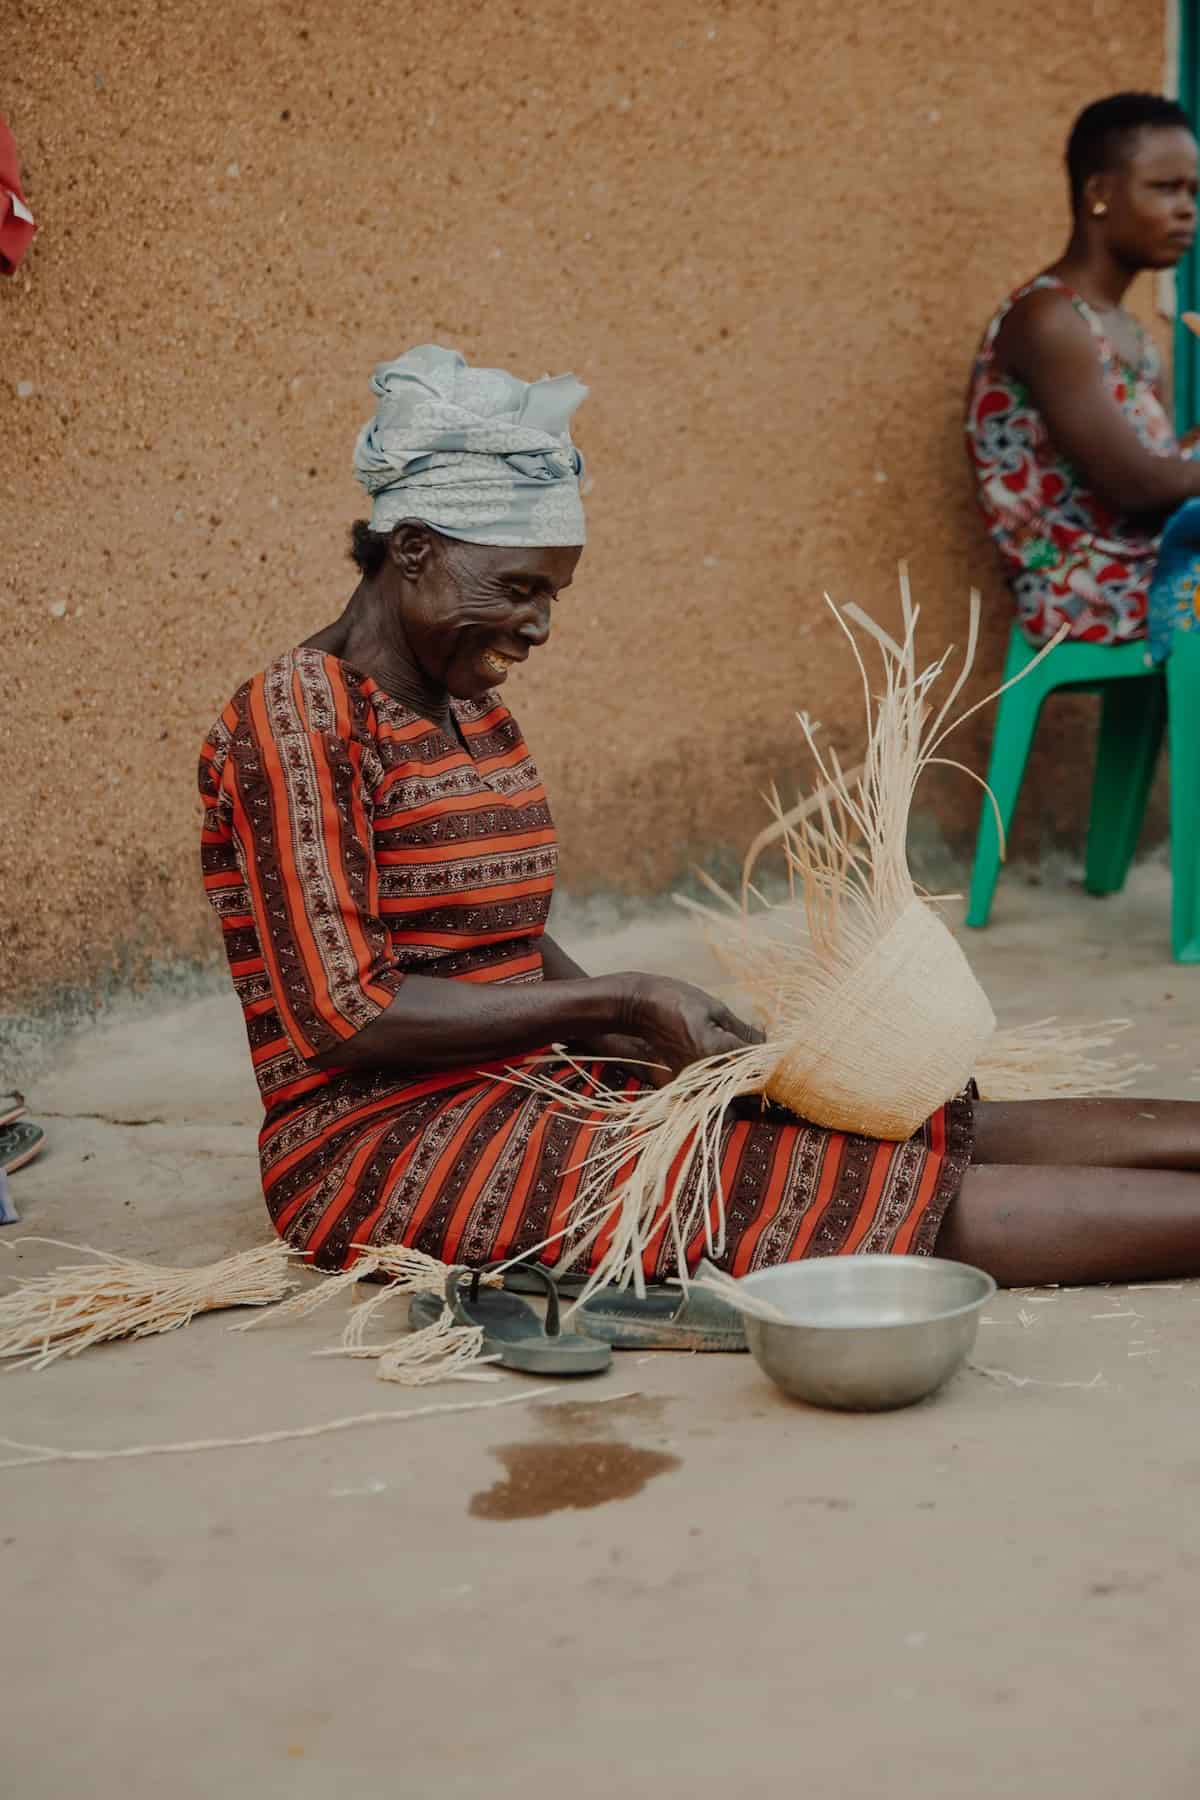 Smiling woman from Ghana weaving Frafra baskets on her legs